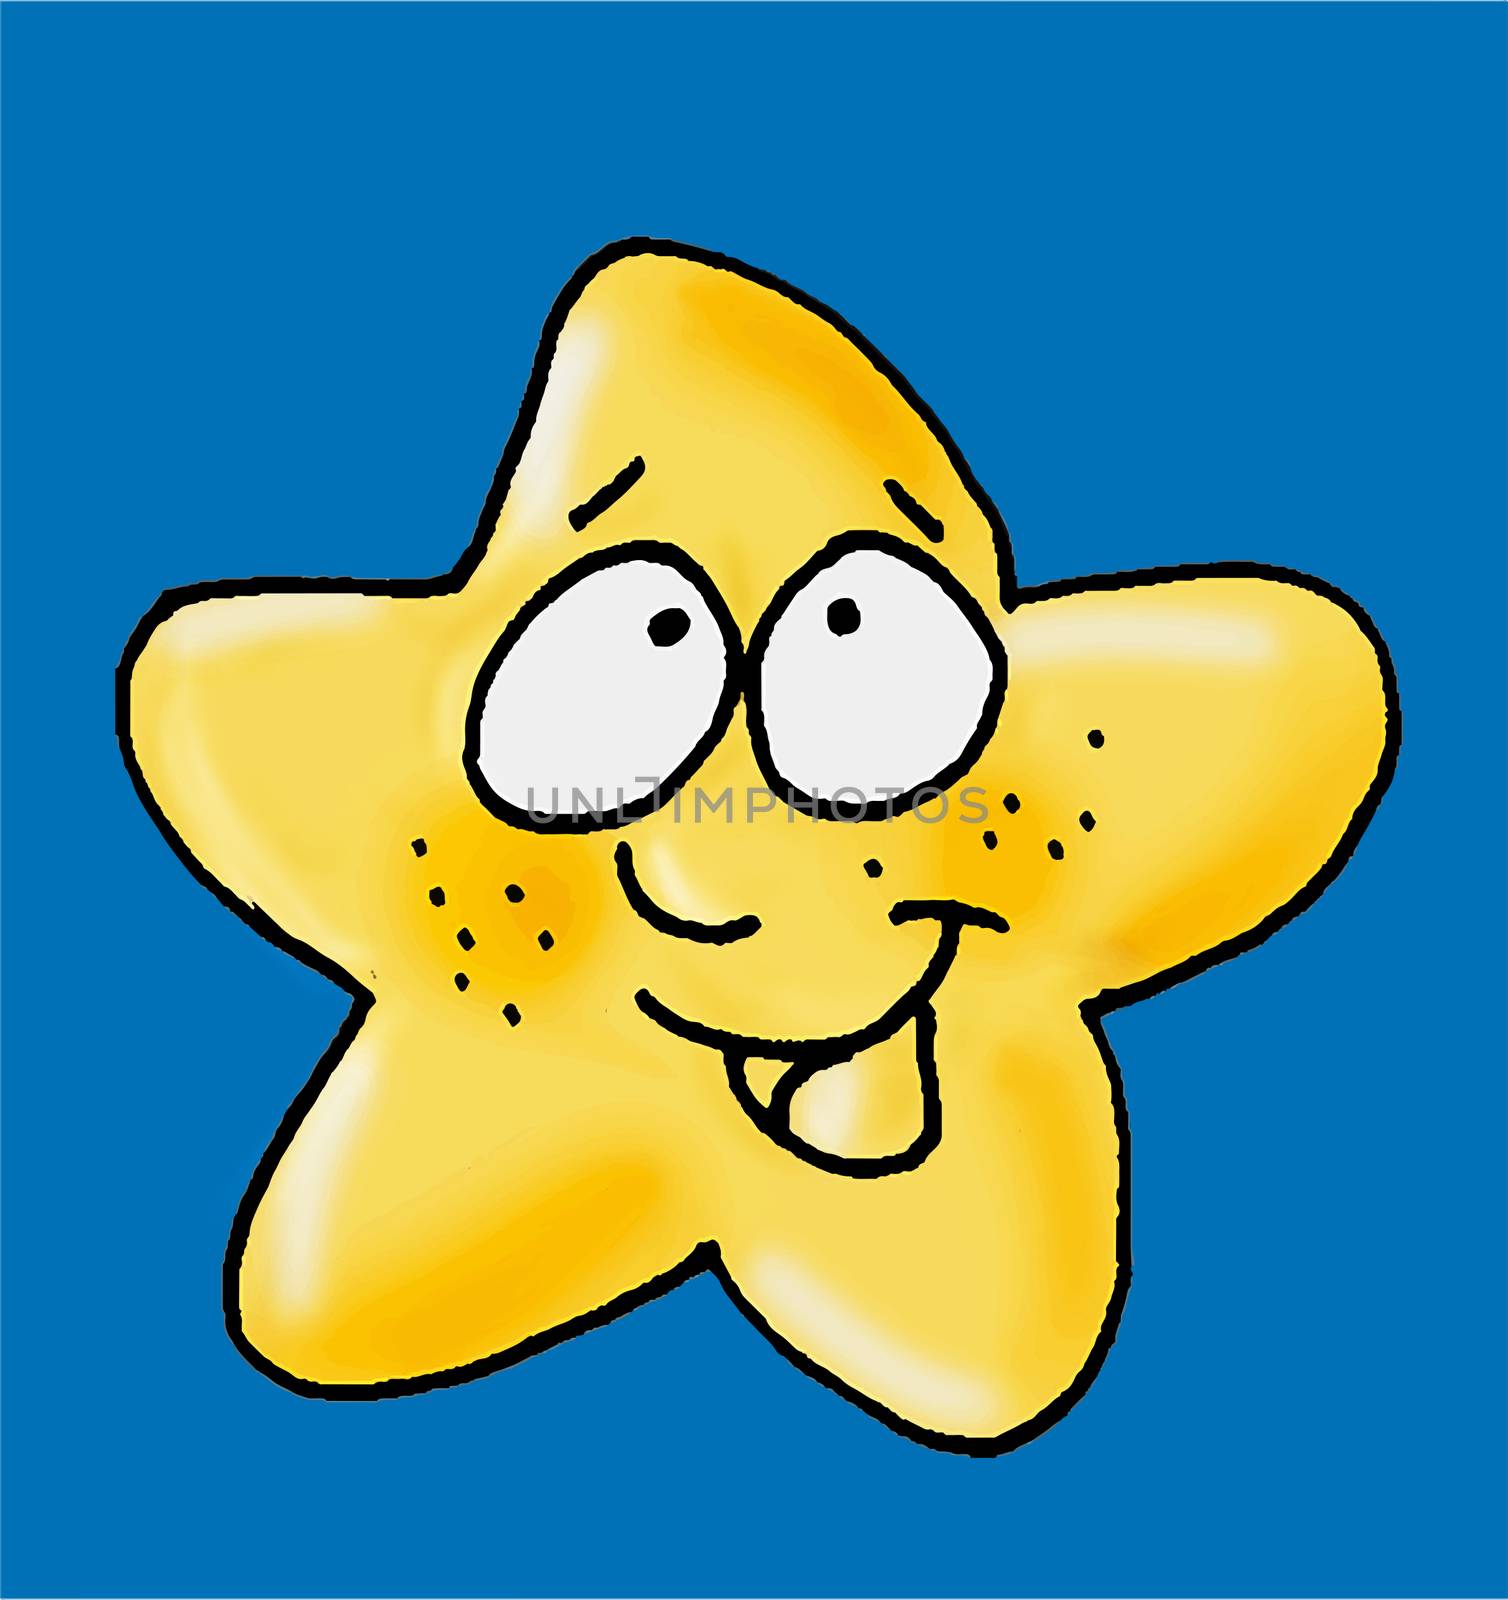 an happy Star by silviagaudenzi